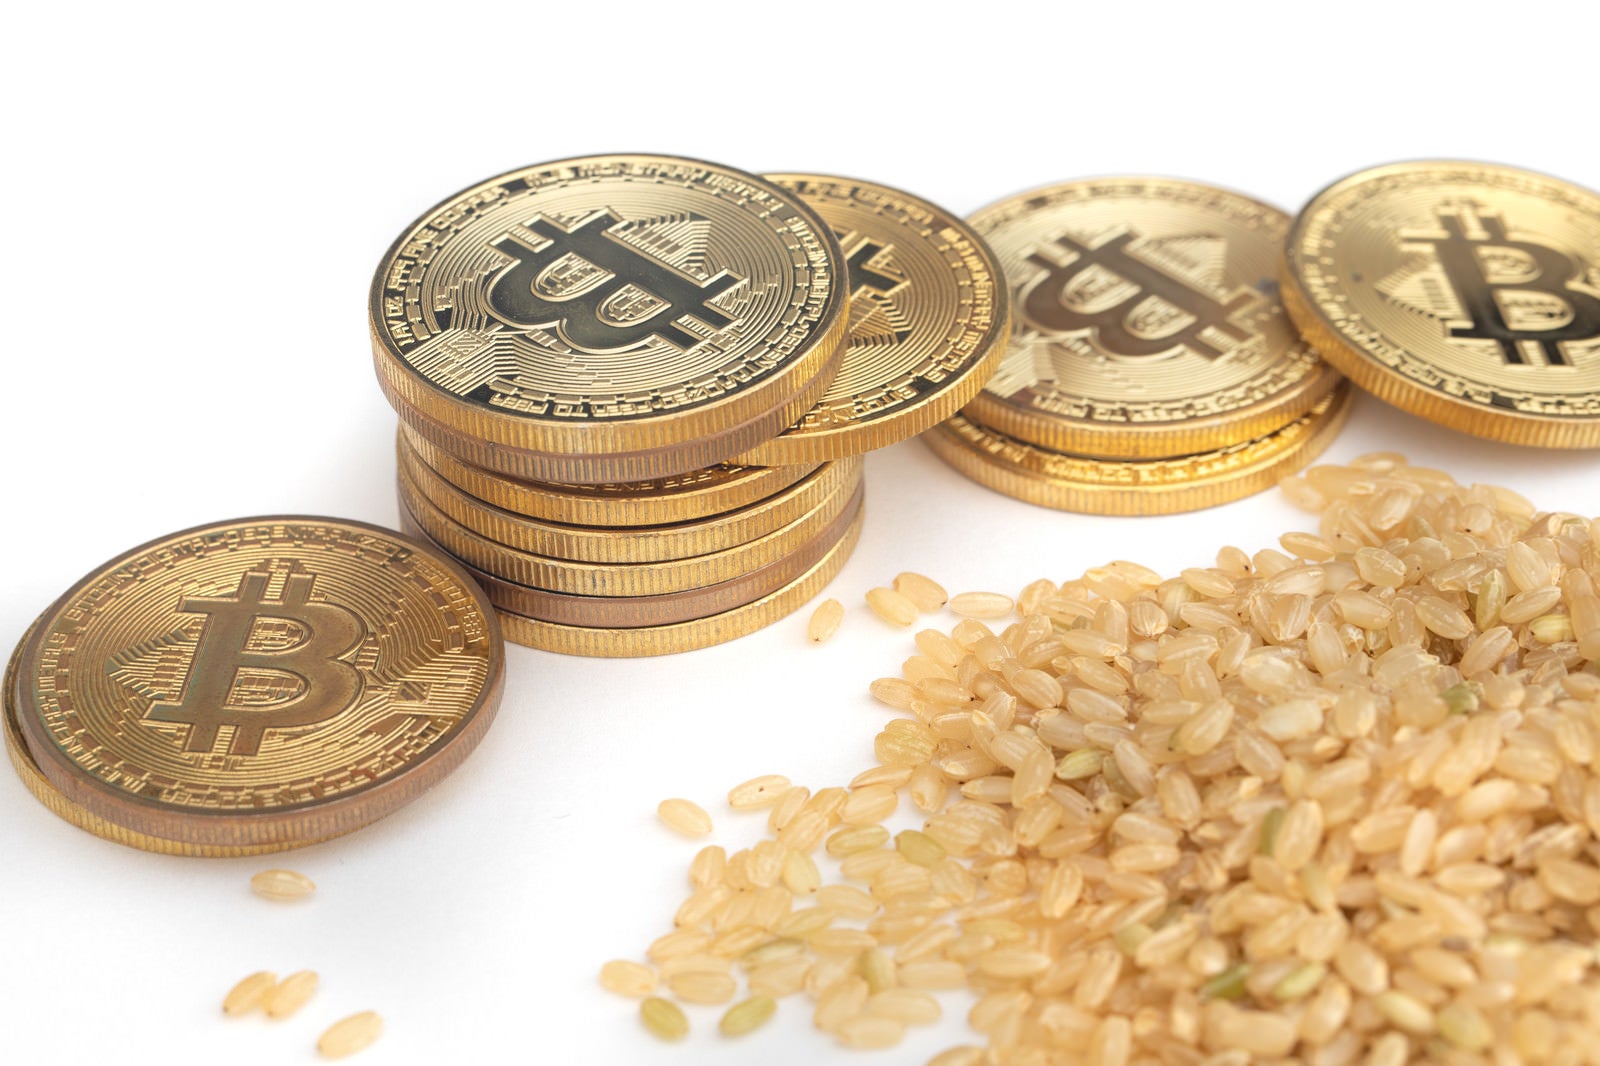 「玄米とビットコインの出会い」の写真